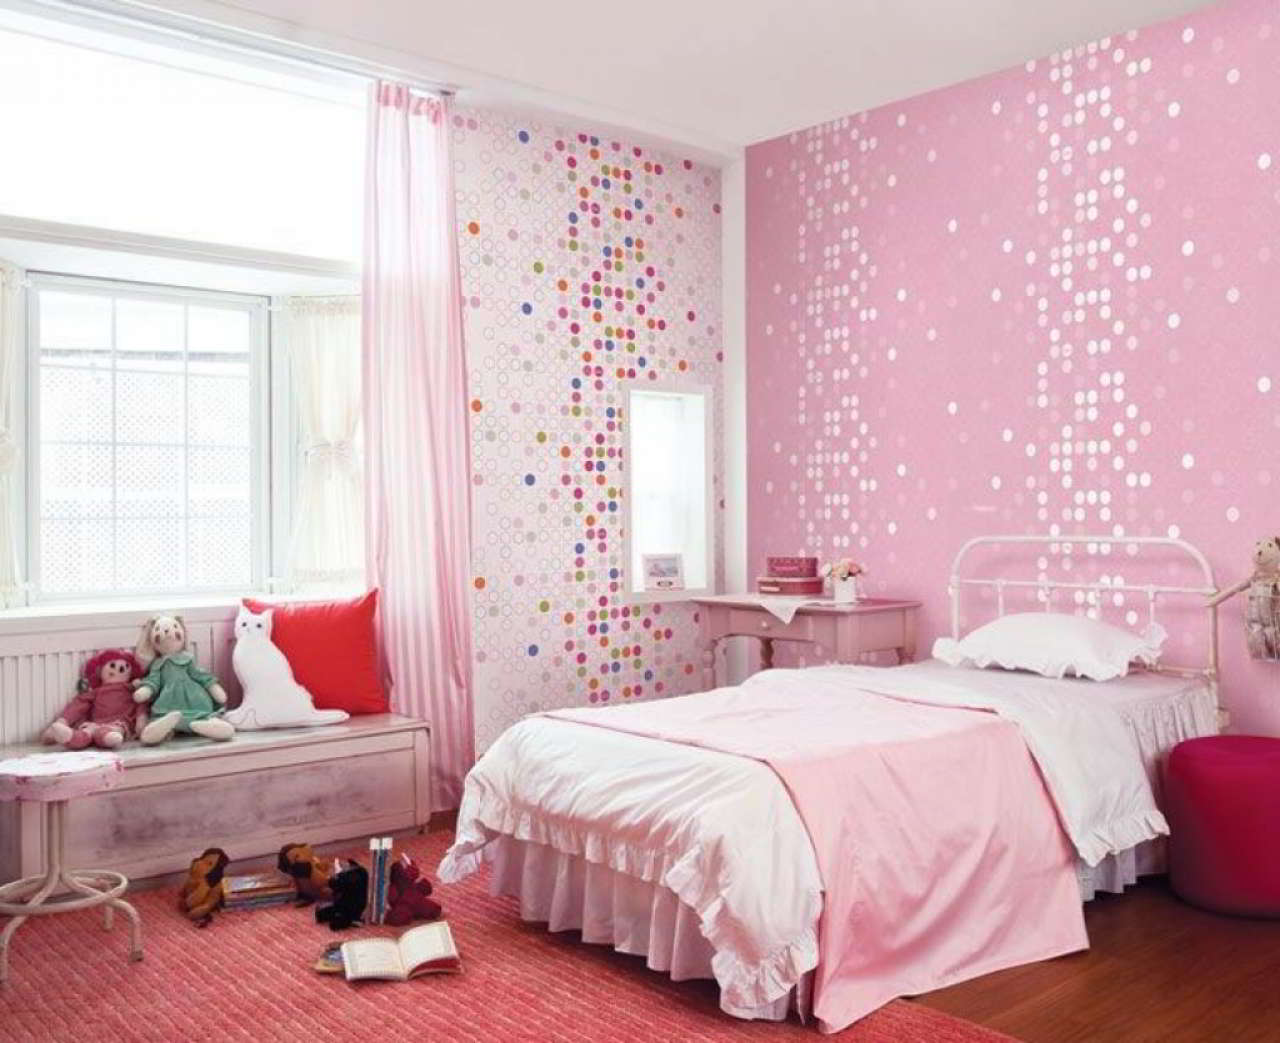 Foto Wallpaper Kamar Tidur Anak Perempuan Pink Interior Rumah 3085